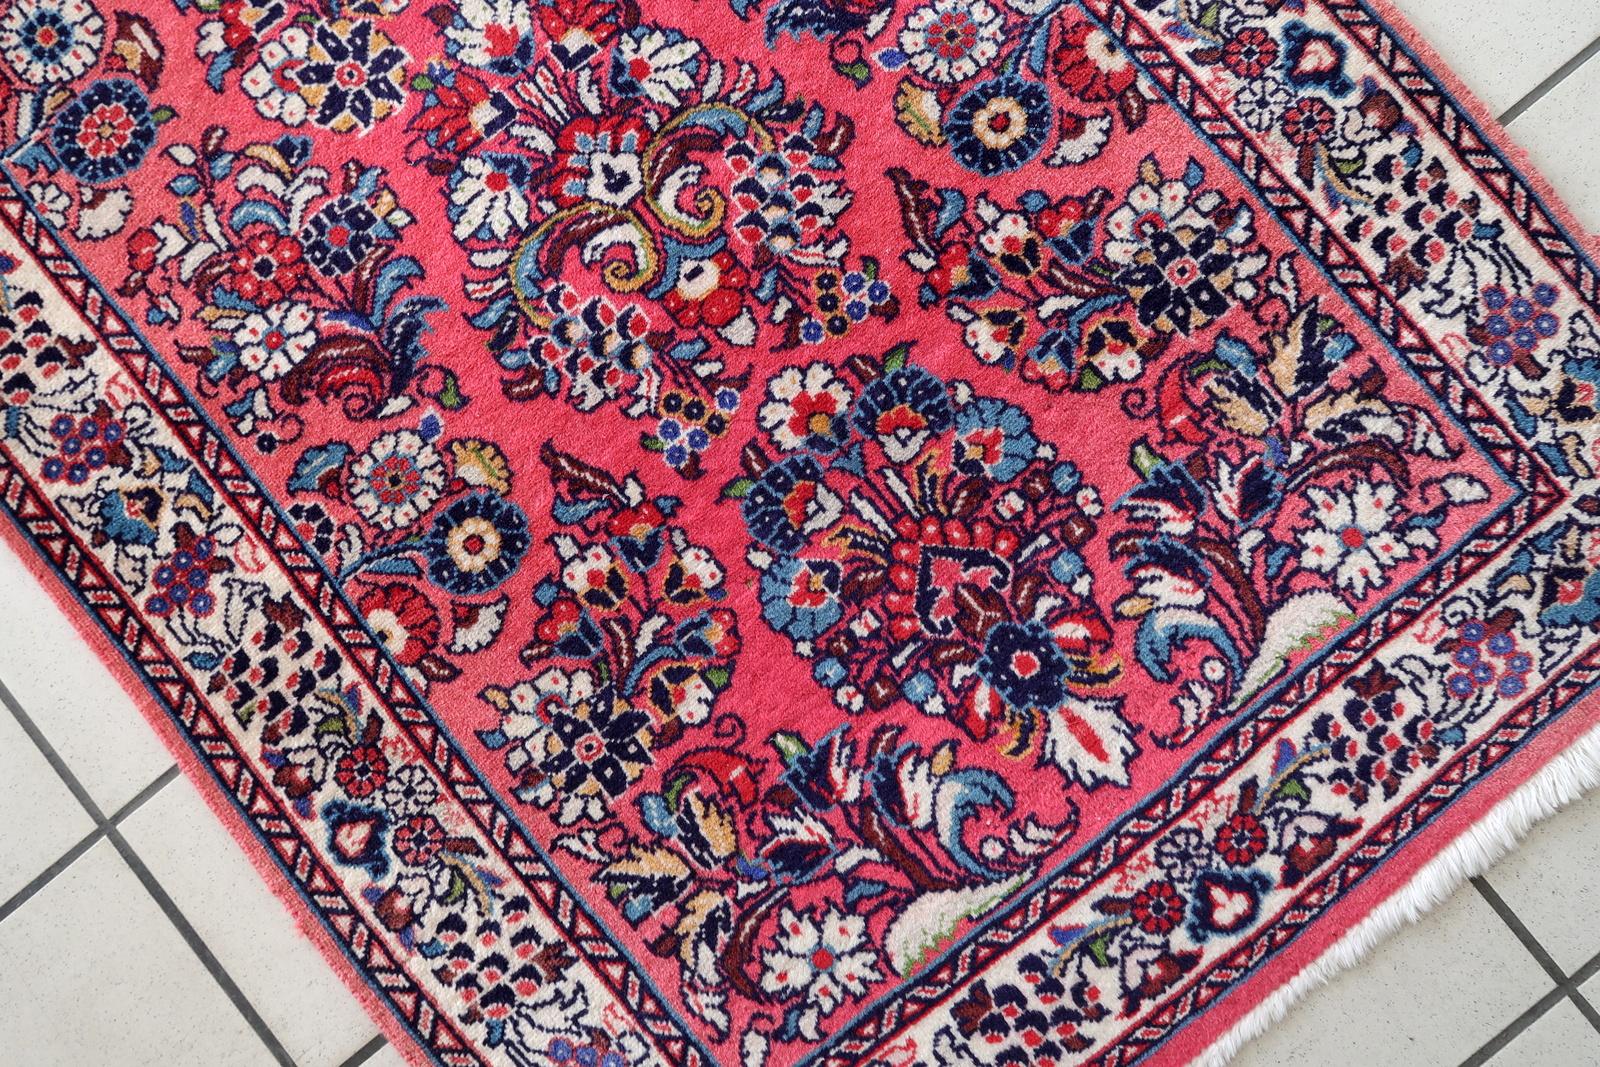 Verschönern Sie Ihr Zuhause mit diesem handgefertigten Sarouk-Läufer aus persischem Vintage-Material. Dieser in den 1960er Jahren gefertigte Teppich misst 2,6' x 6,8' (81cm x 208cm) und ist in gutem, verblasstem Zustand. Das aus hochwertiger Wolle